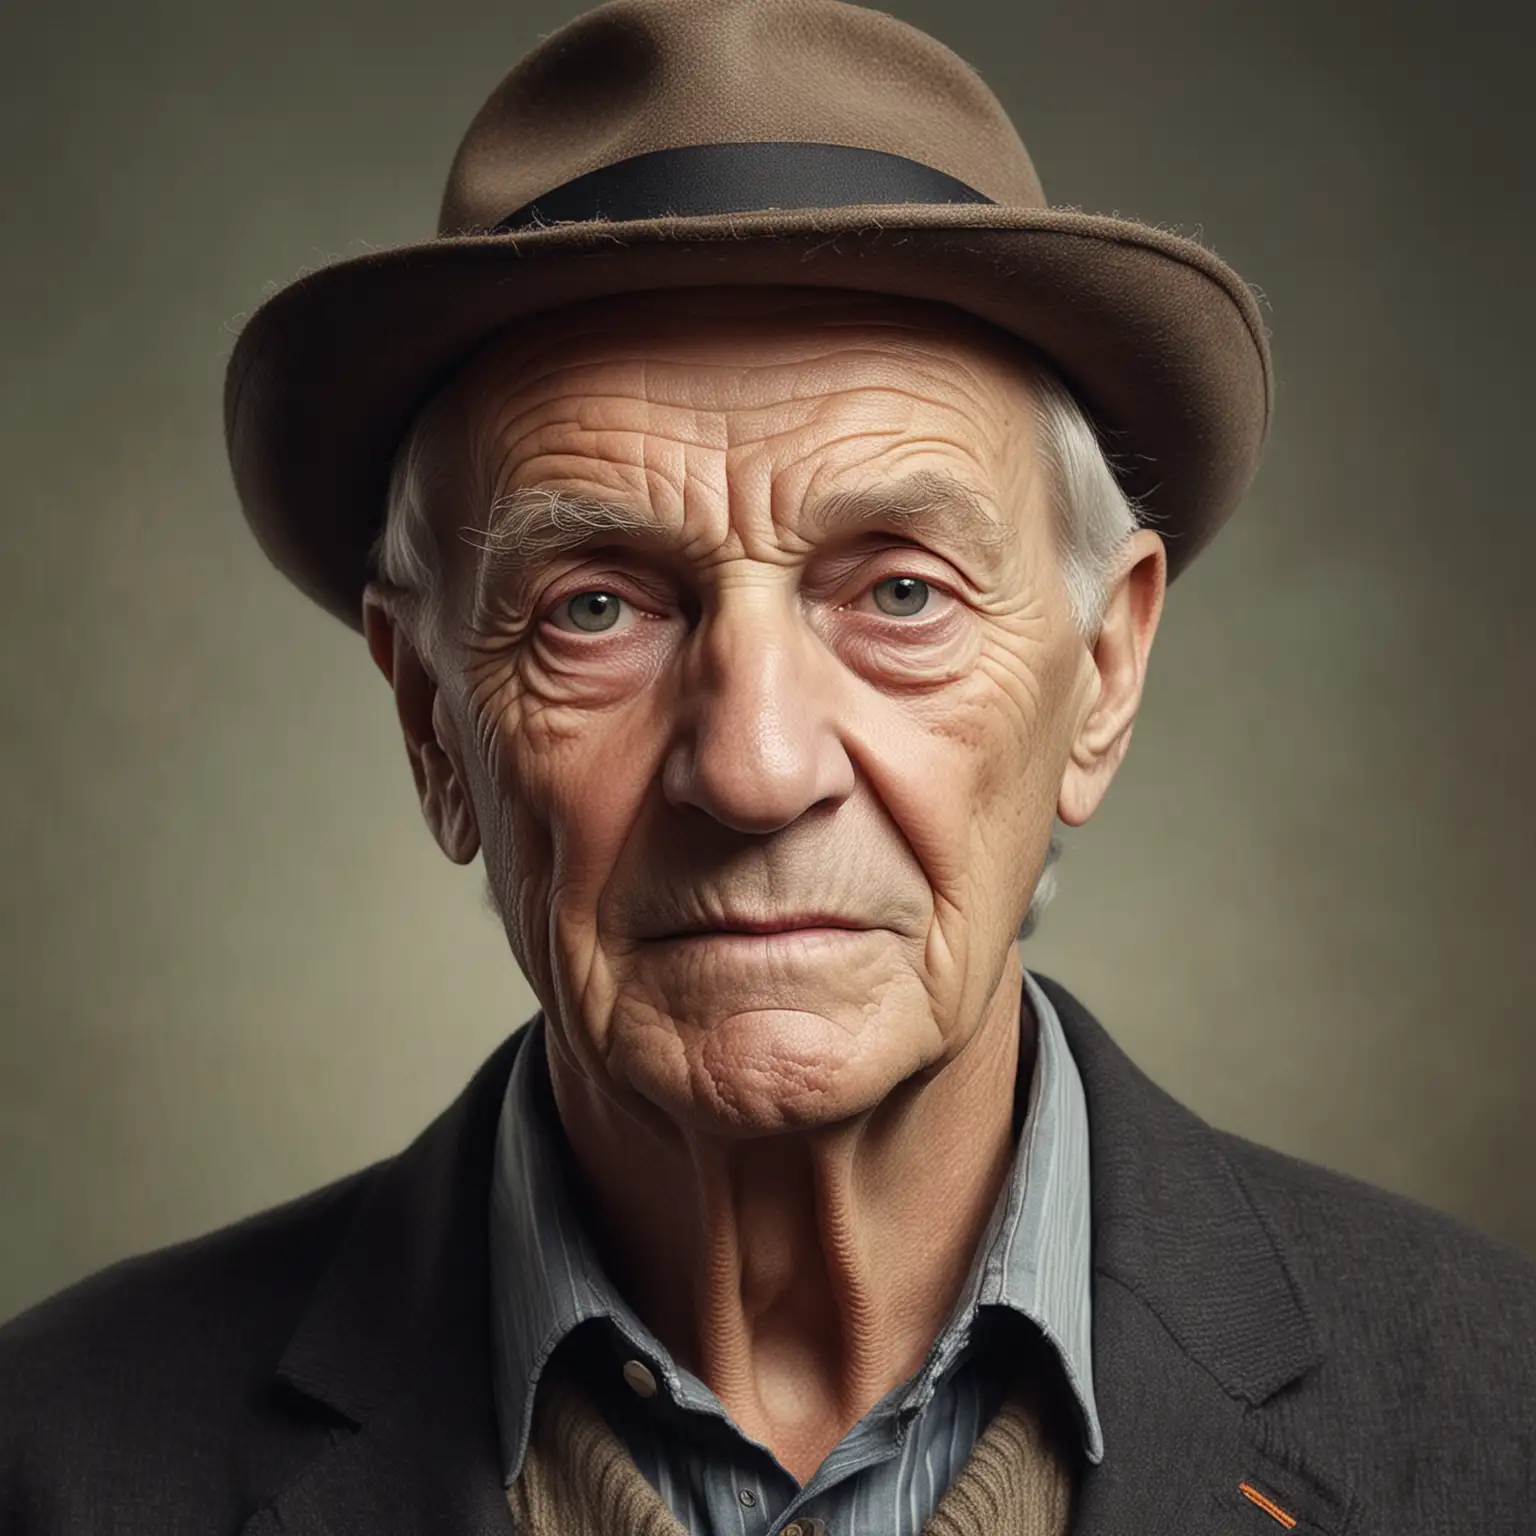 Realistic Portrait of an Elderly Dutch Man Aged 85